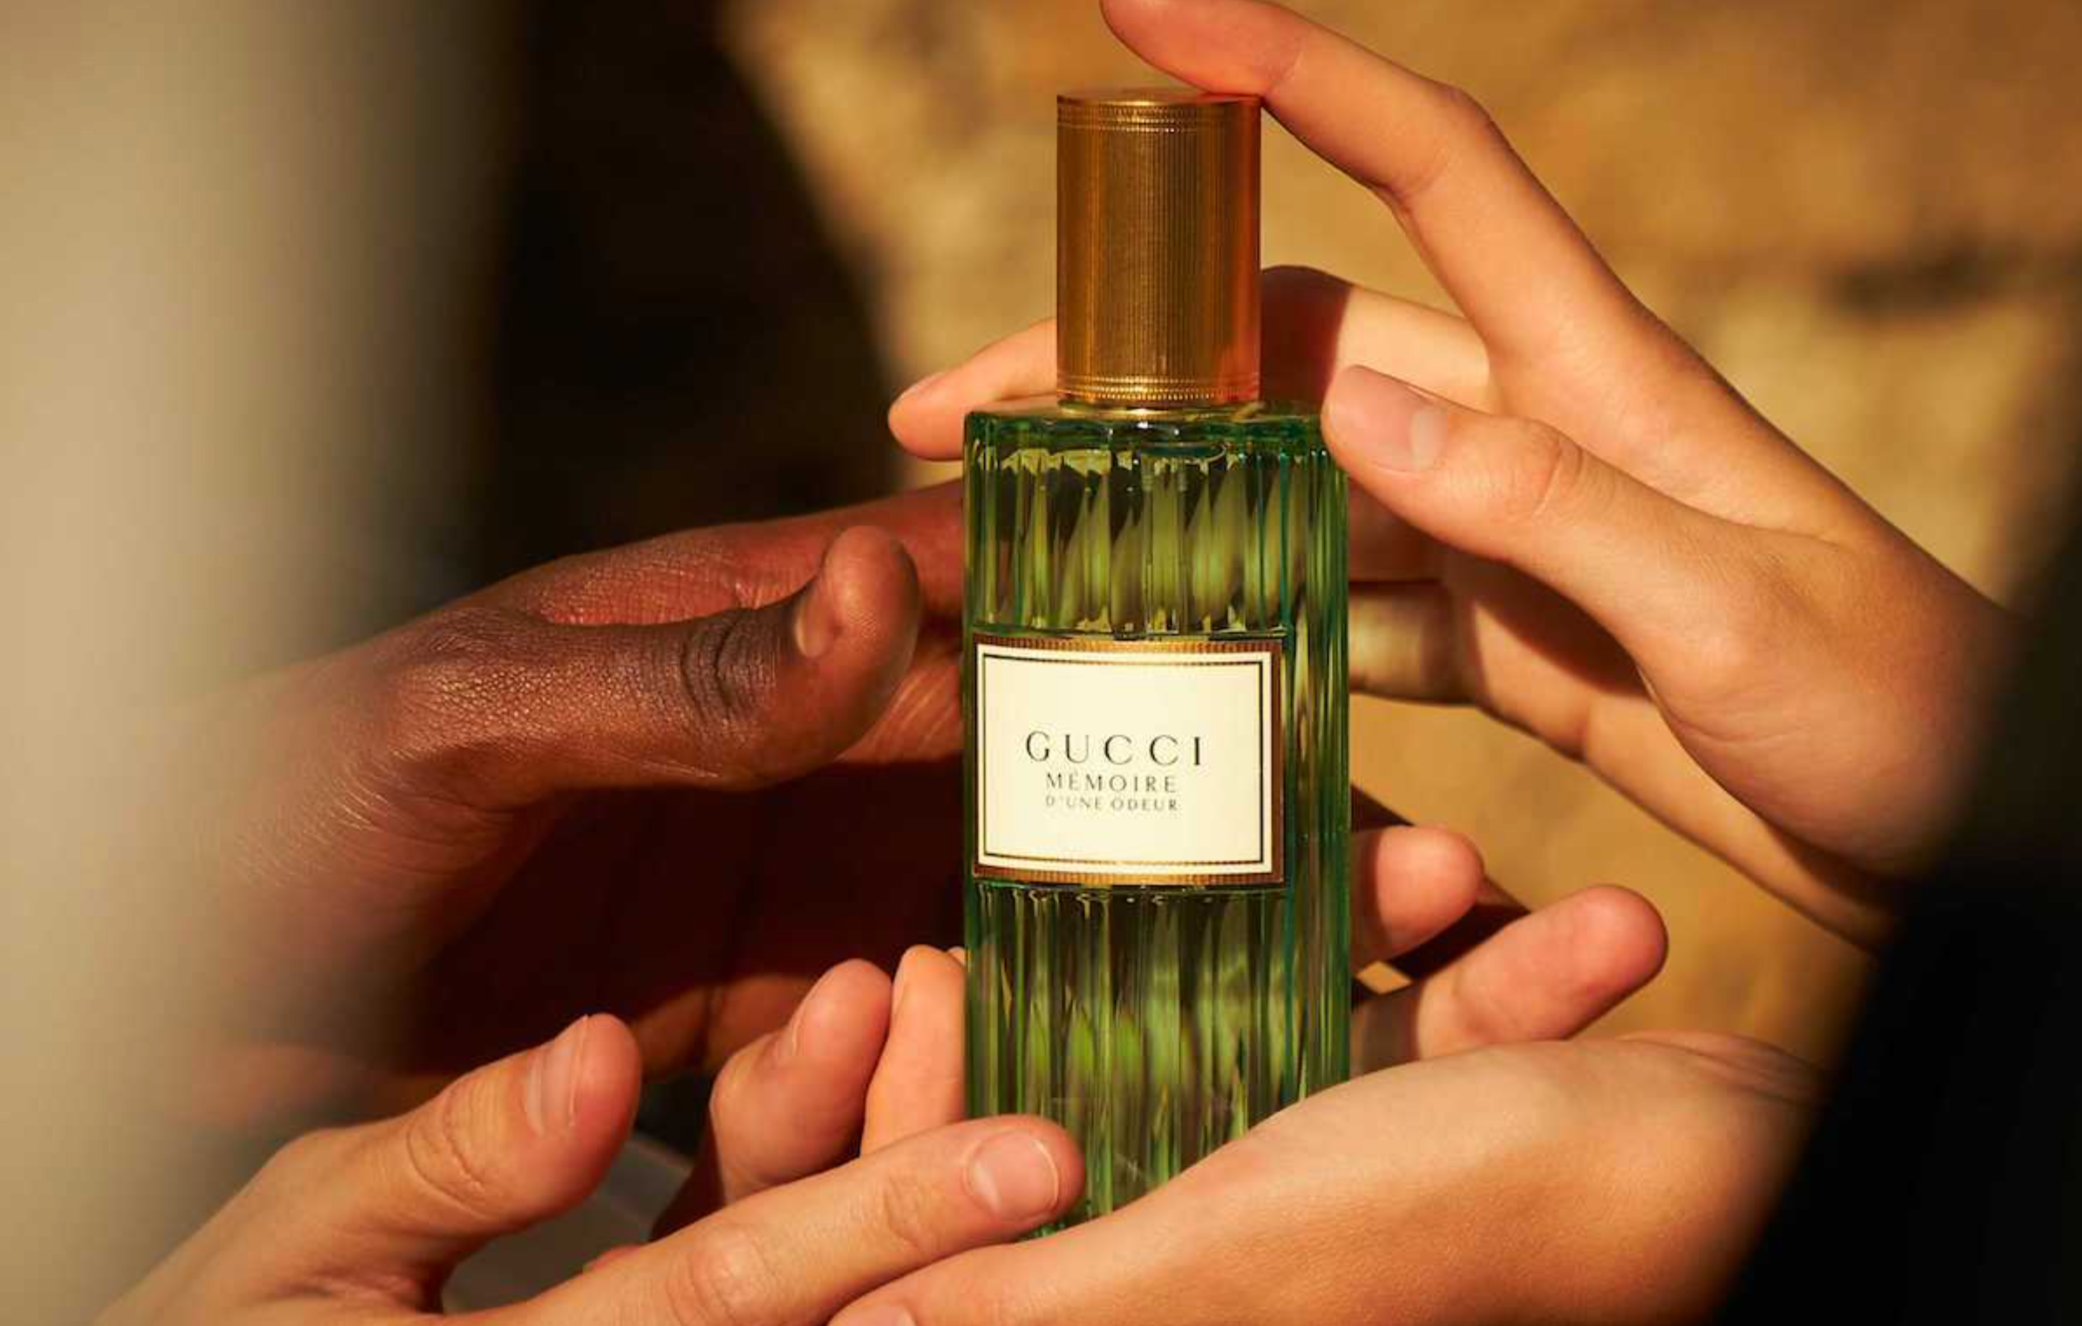 Gucci's unisex fragrance - Mémoire d'Une Odeur. Image: Gucci